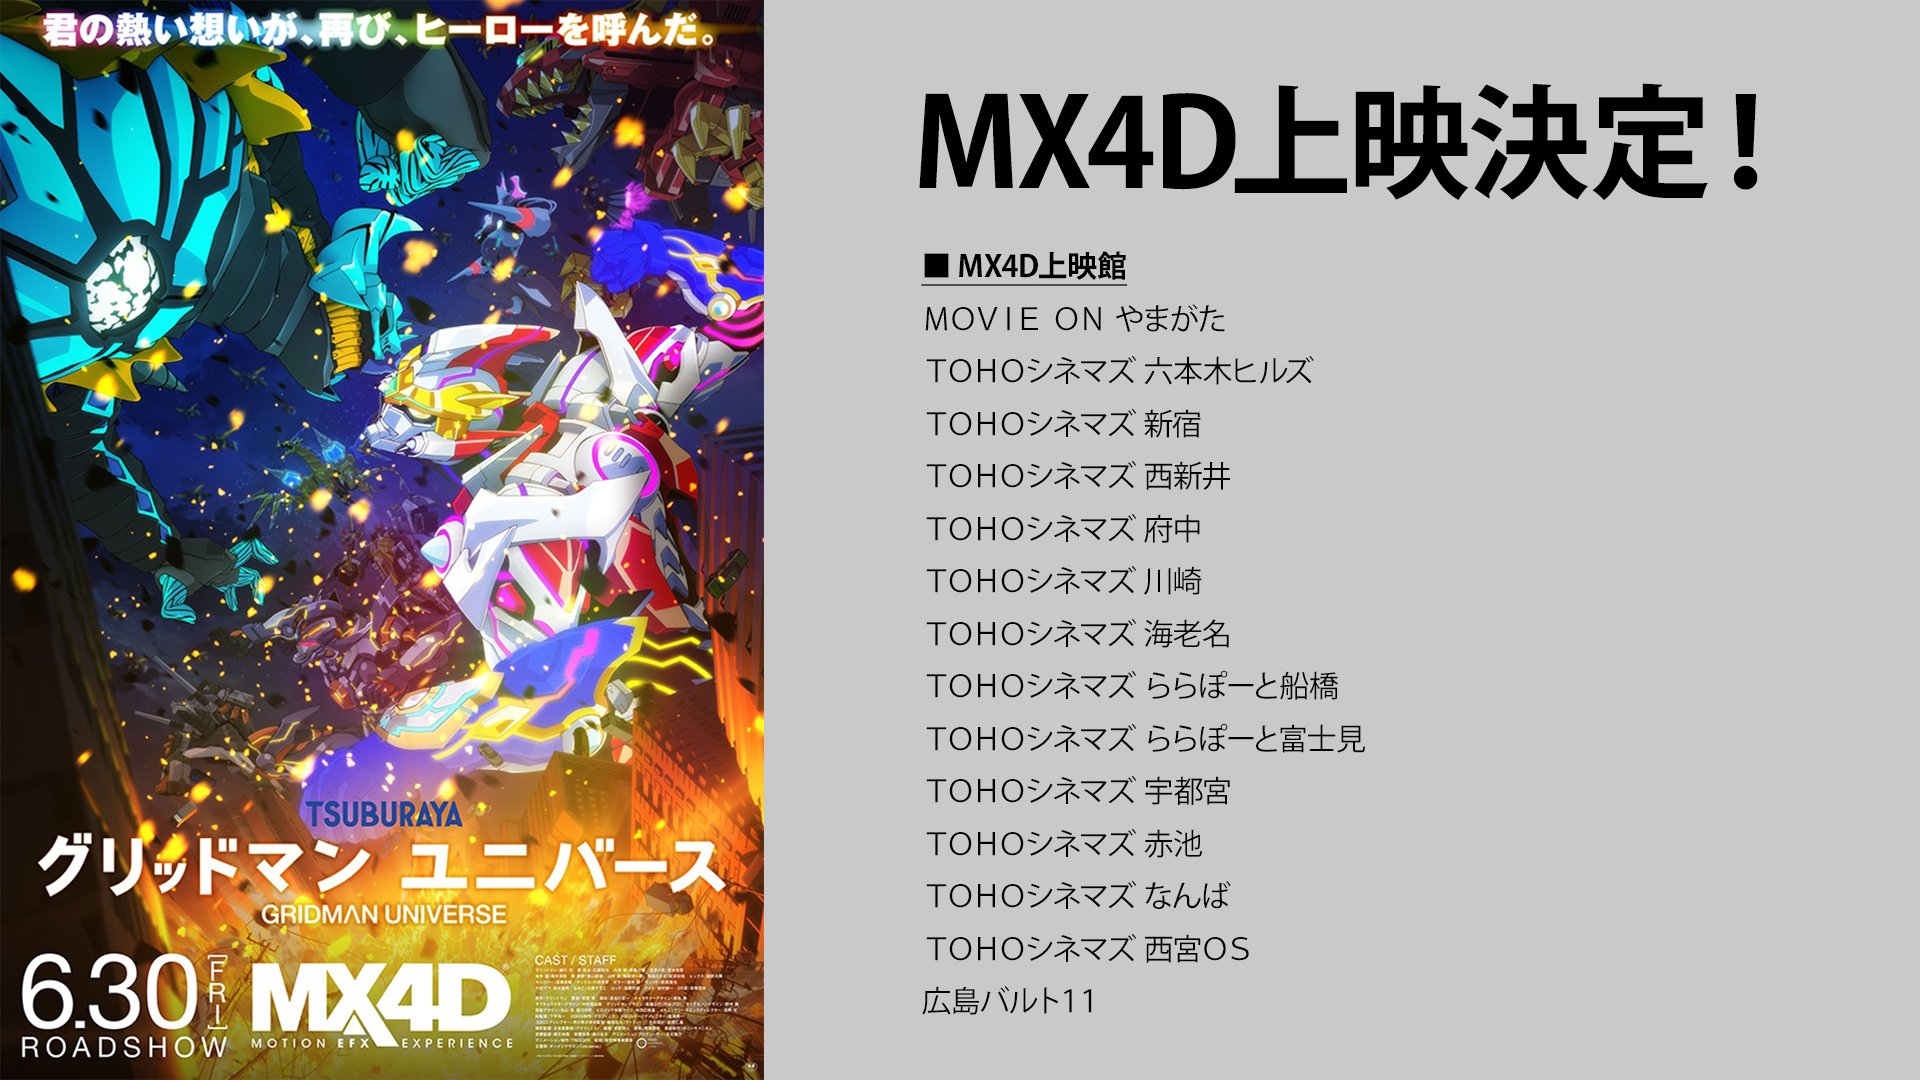 グリッドマン ユニバース」MX4D上映 6月30日より開催! 入場者特典も!